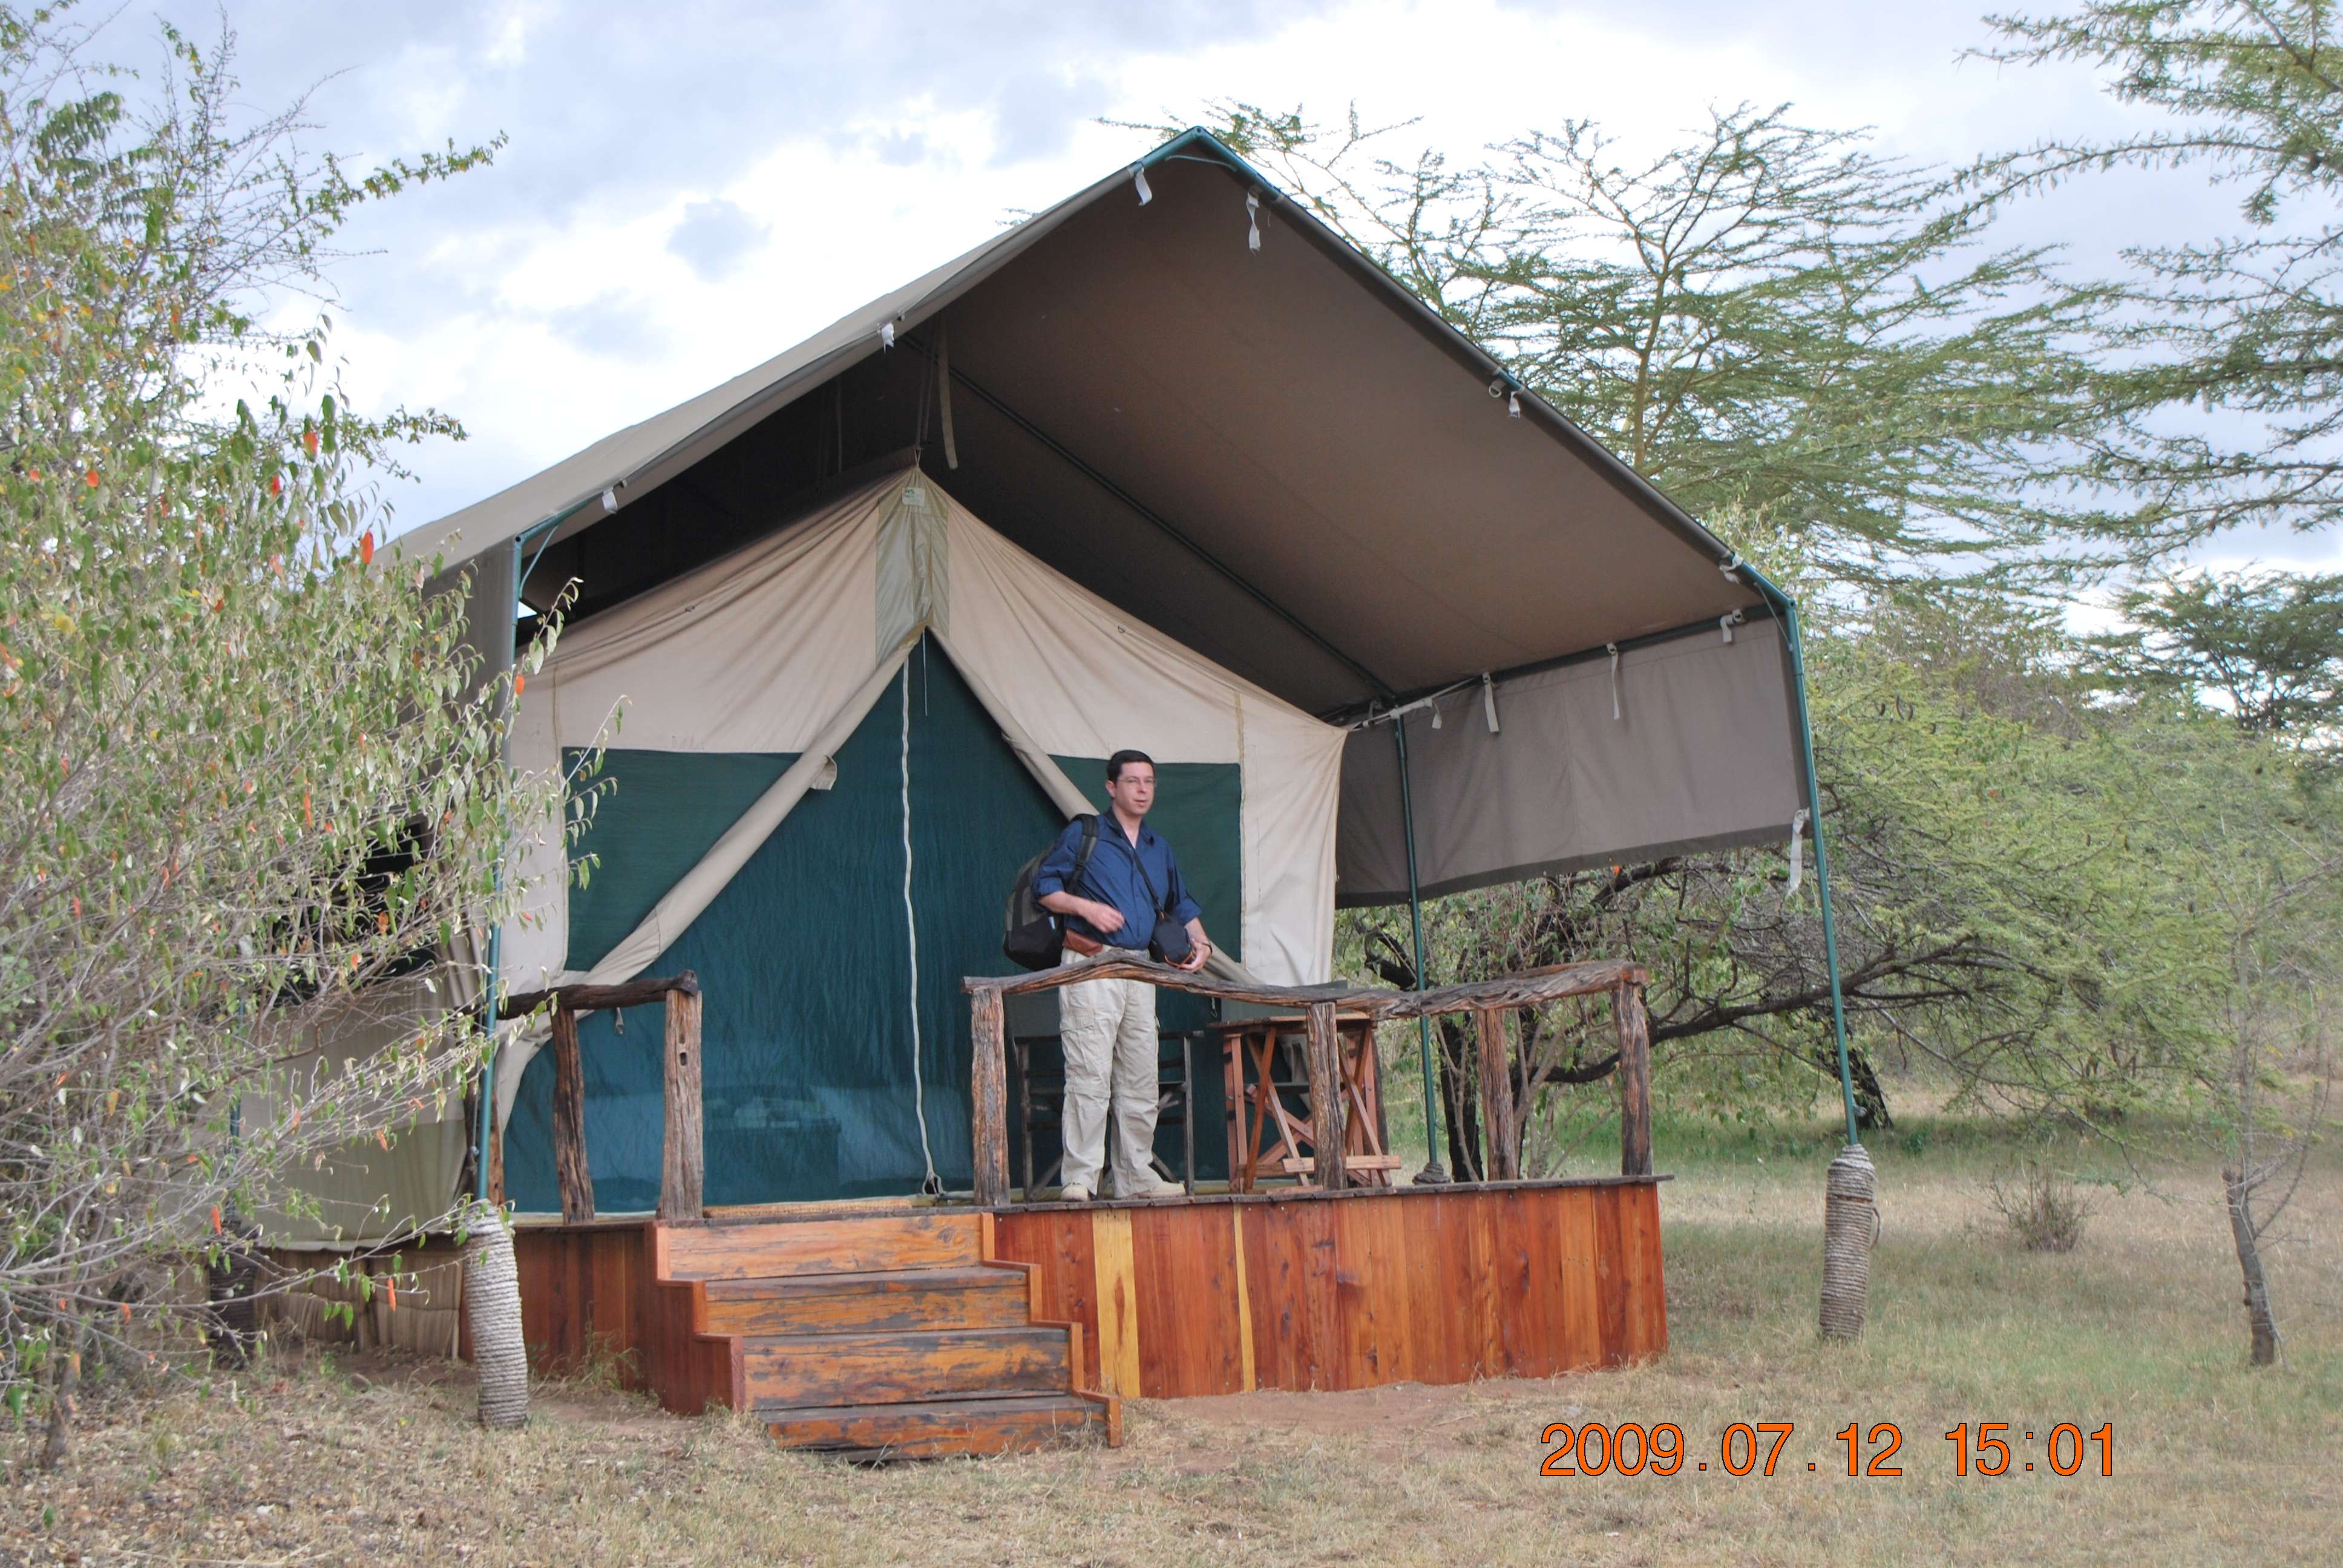 Preparativos y viajes - Kenia una experiencia inolvidable (1)